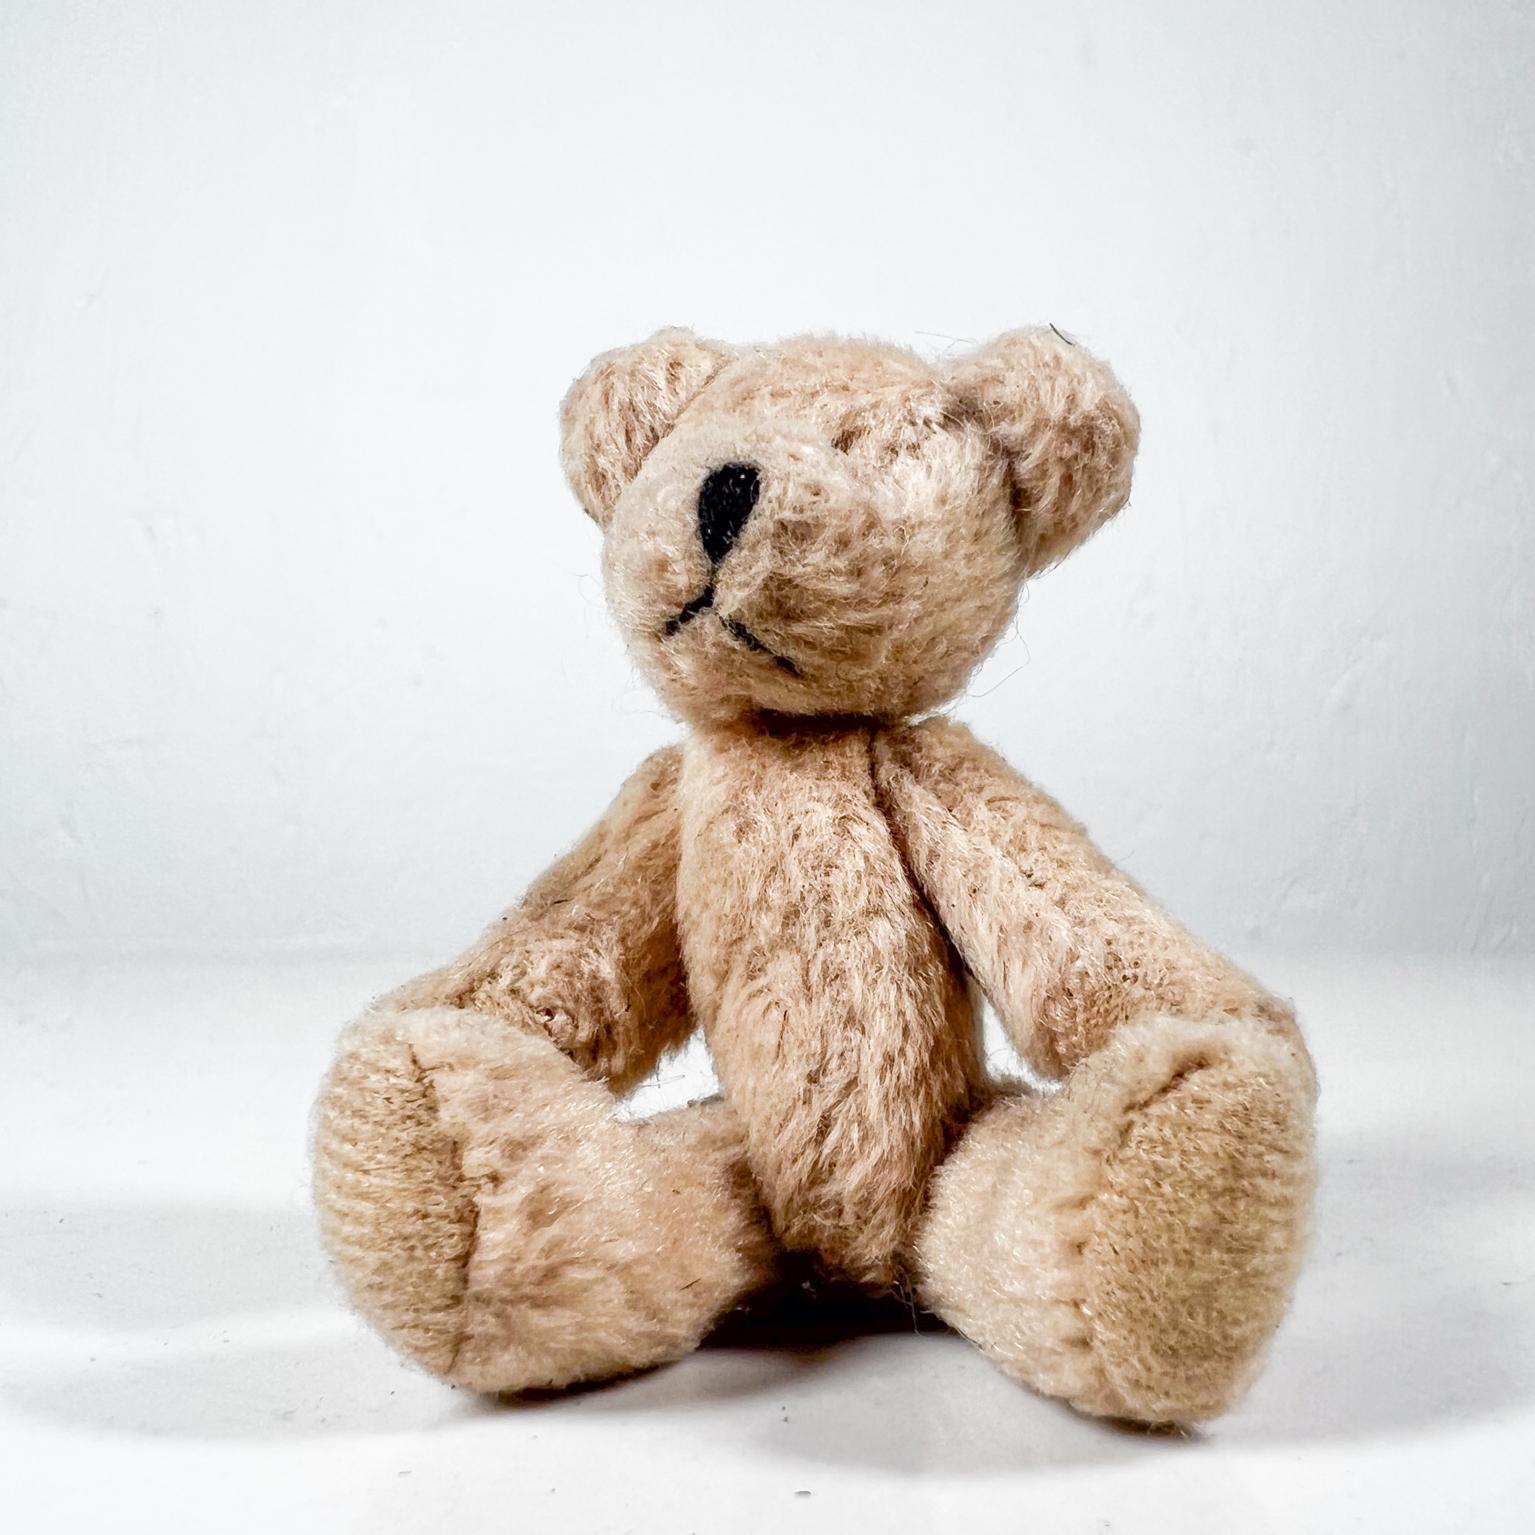 Fabric Mid 20th Century Tiny Baby Teddy Bear Soft Huggable Vintage